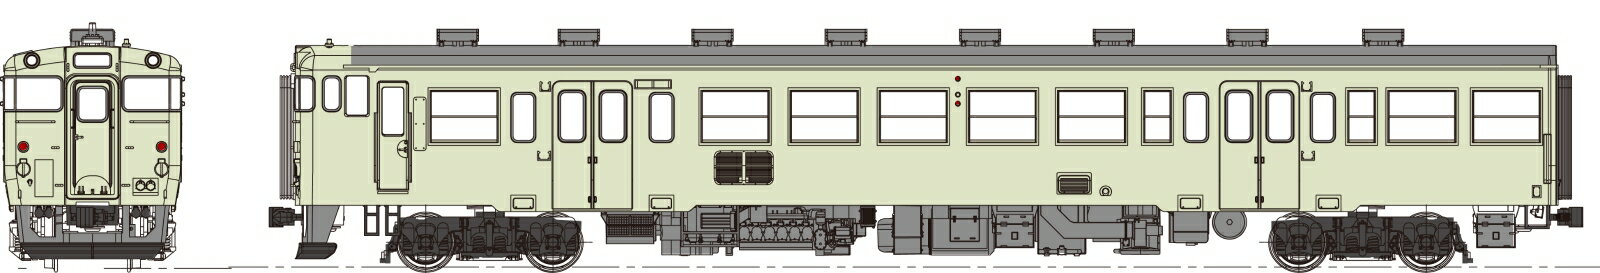 キハ47-1000代クリーム10号、動力なし 【TW-K47-1000ET】 (鉄道模型 HOゲージ)